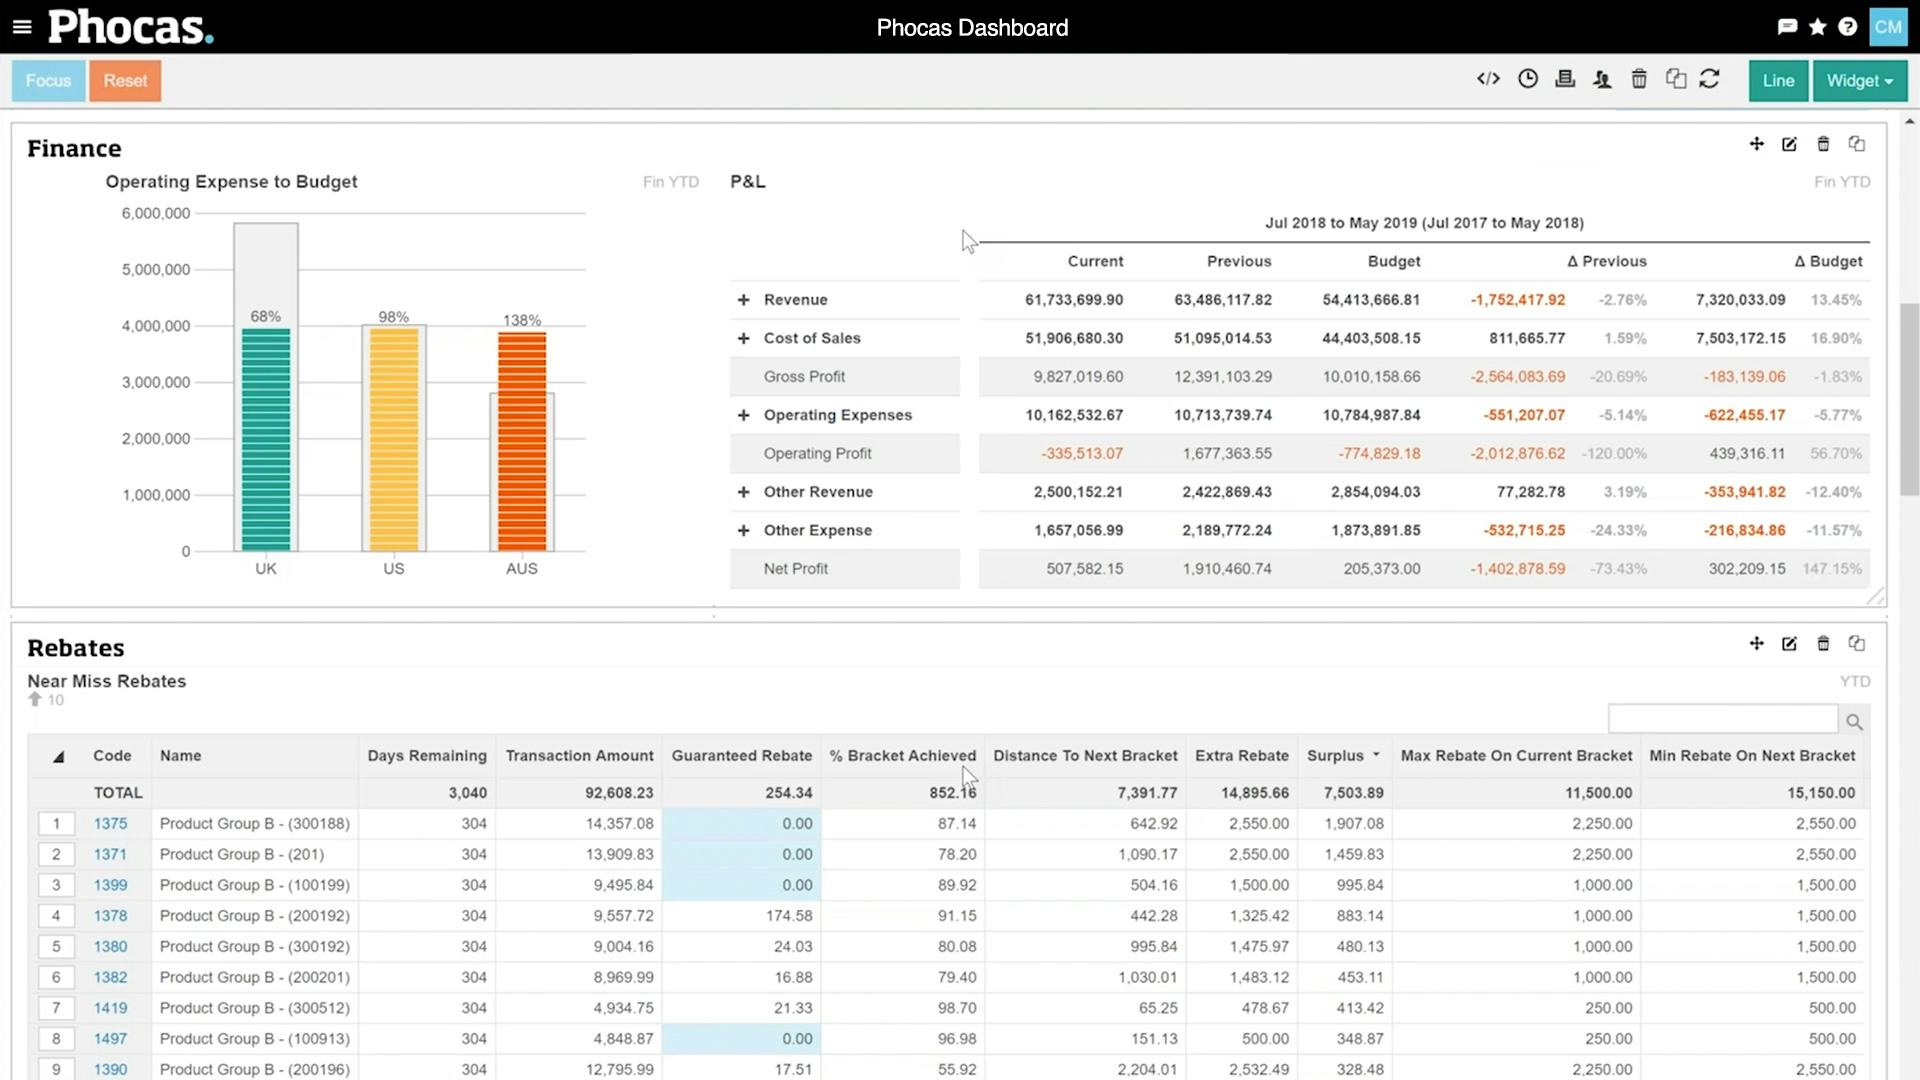 Phocas Analytics Software - Finance rebates dashboard